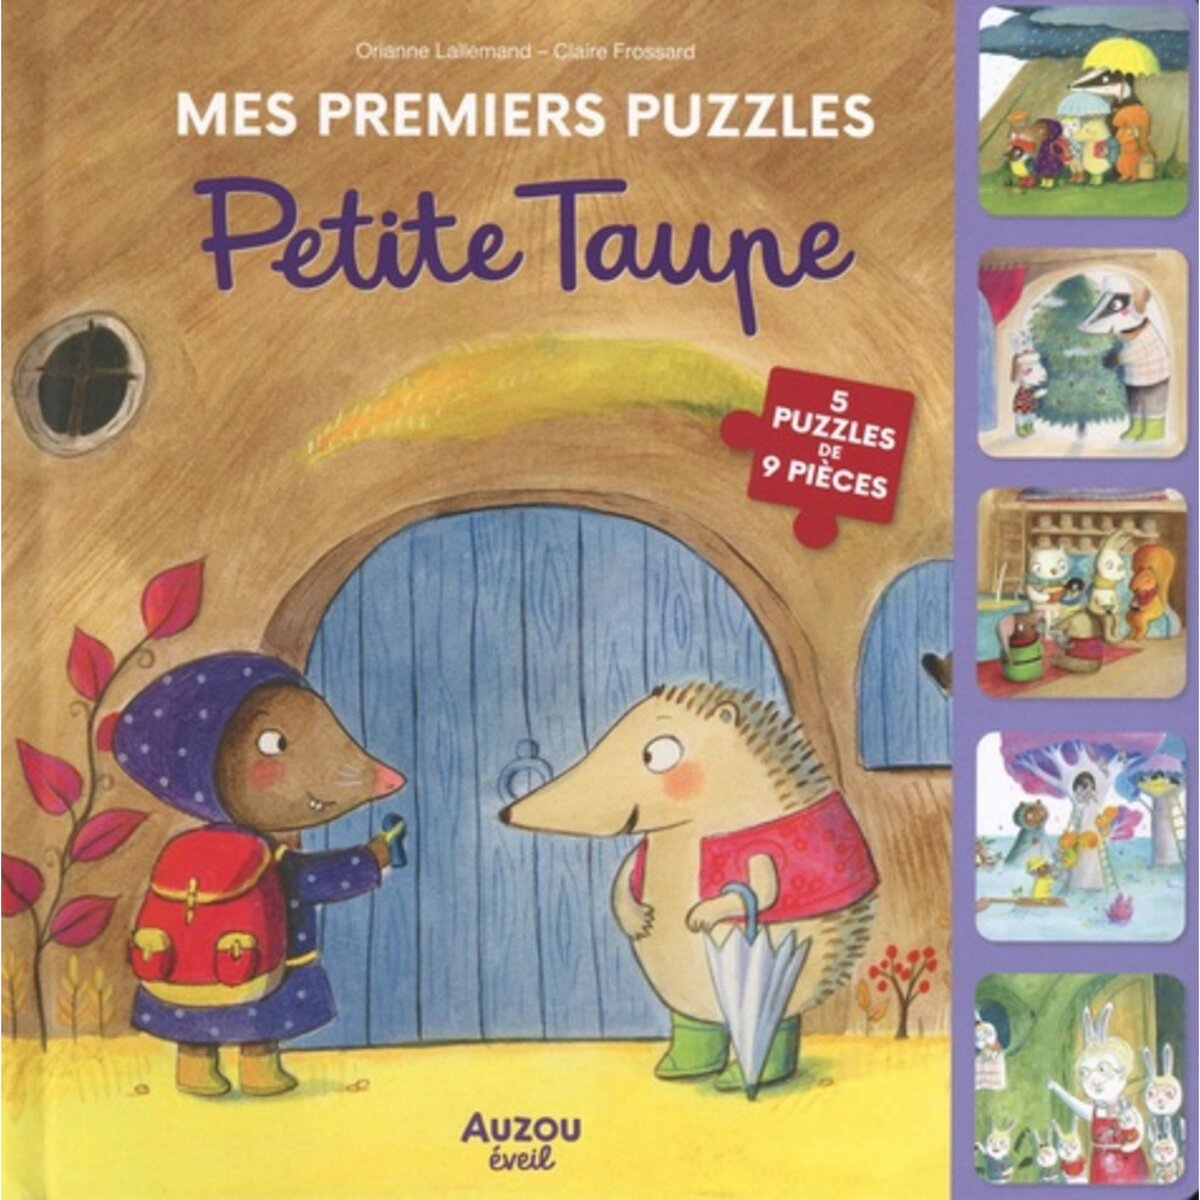  PETITE TAUPE. 5 PUZZLE DE 9 PIECES, Frossard Claire